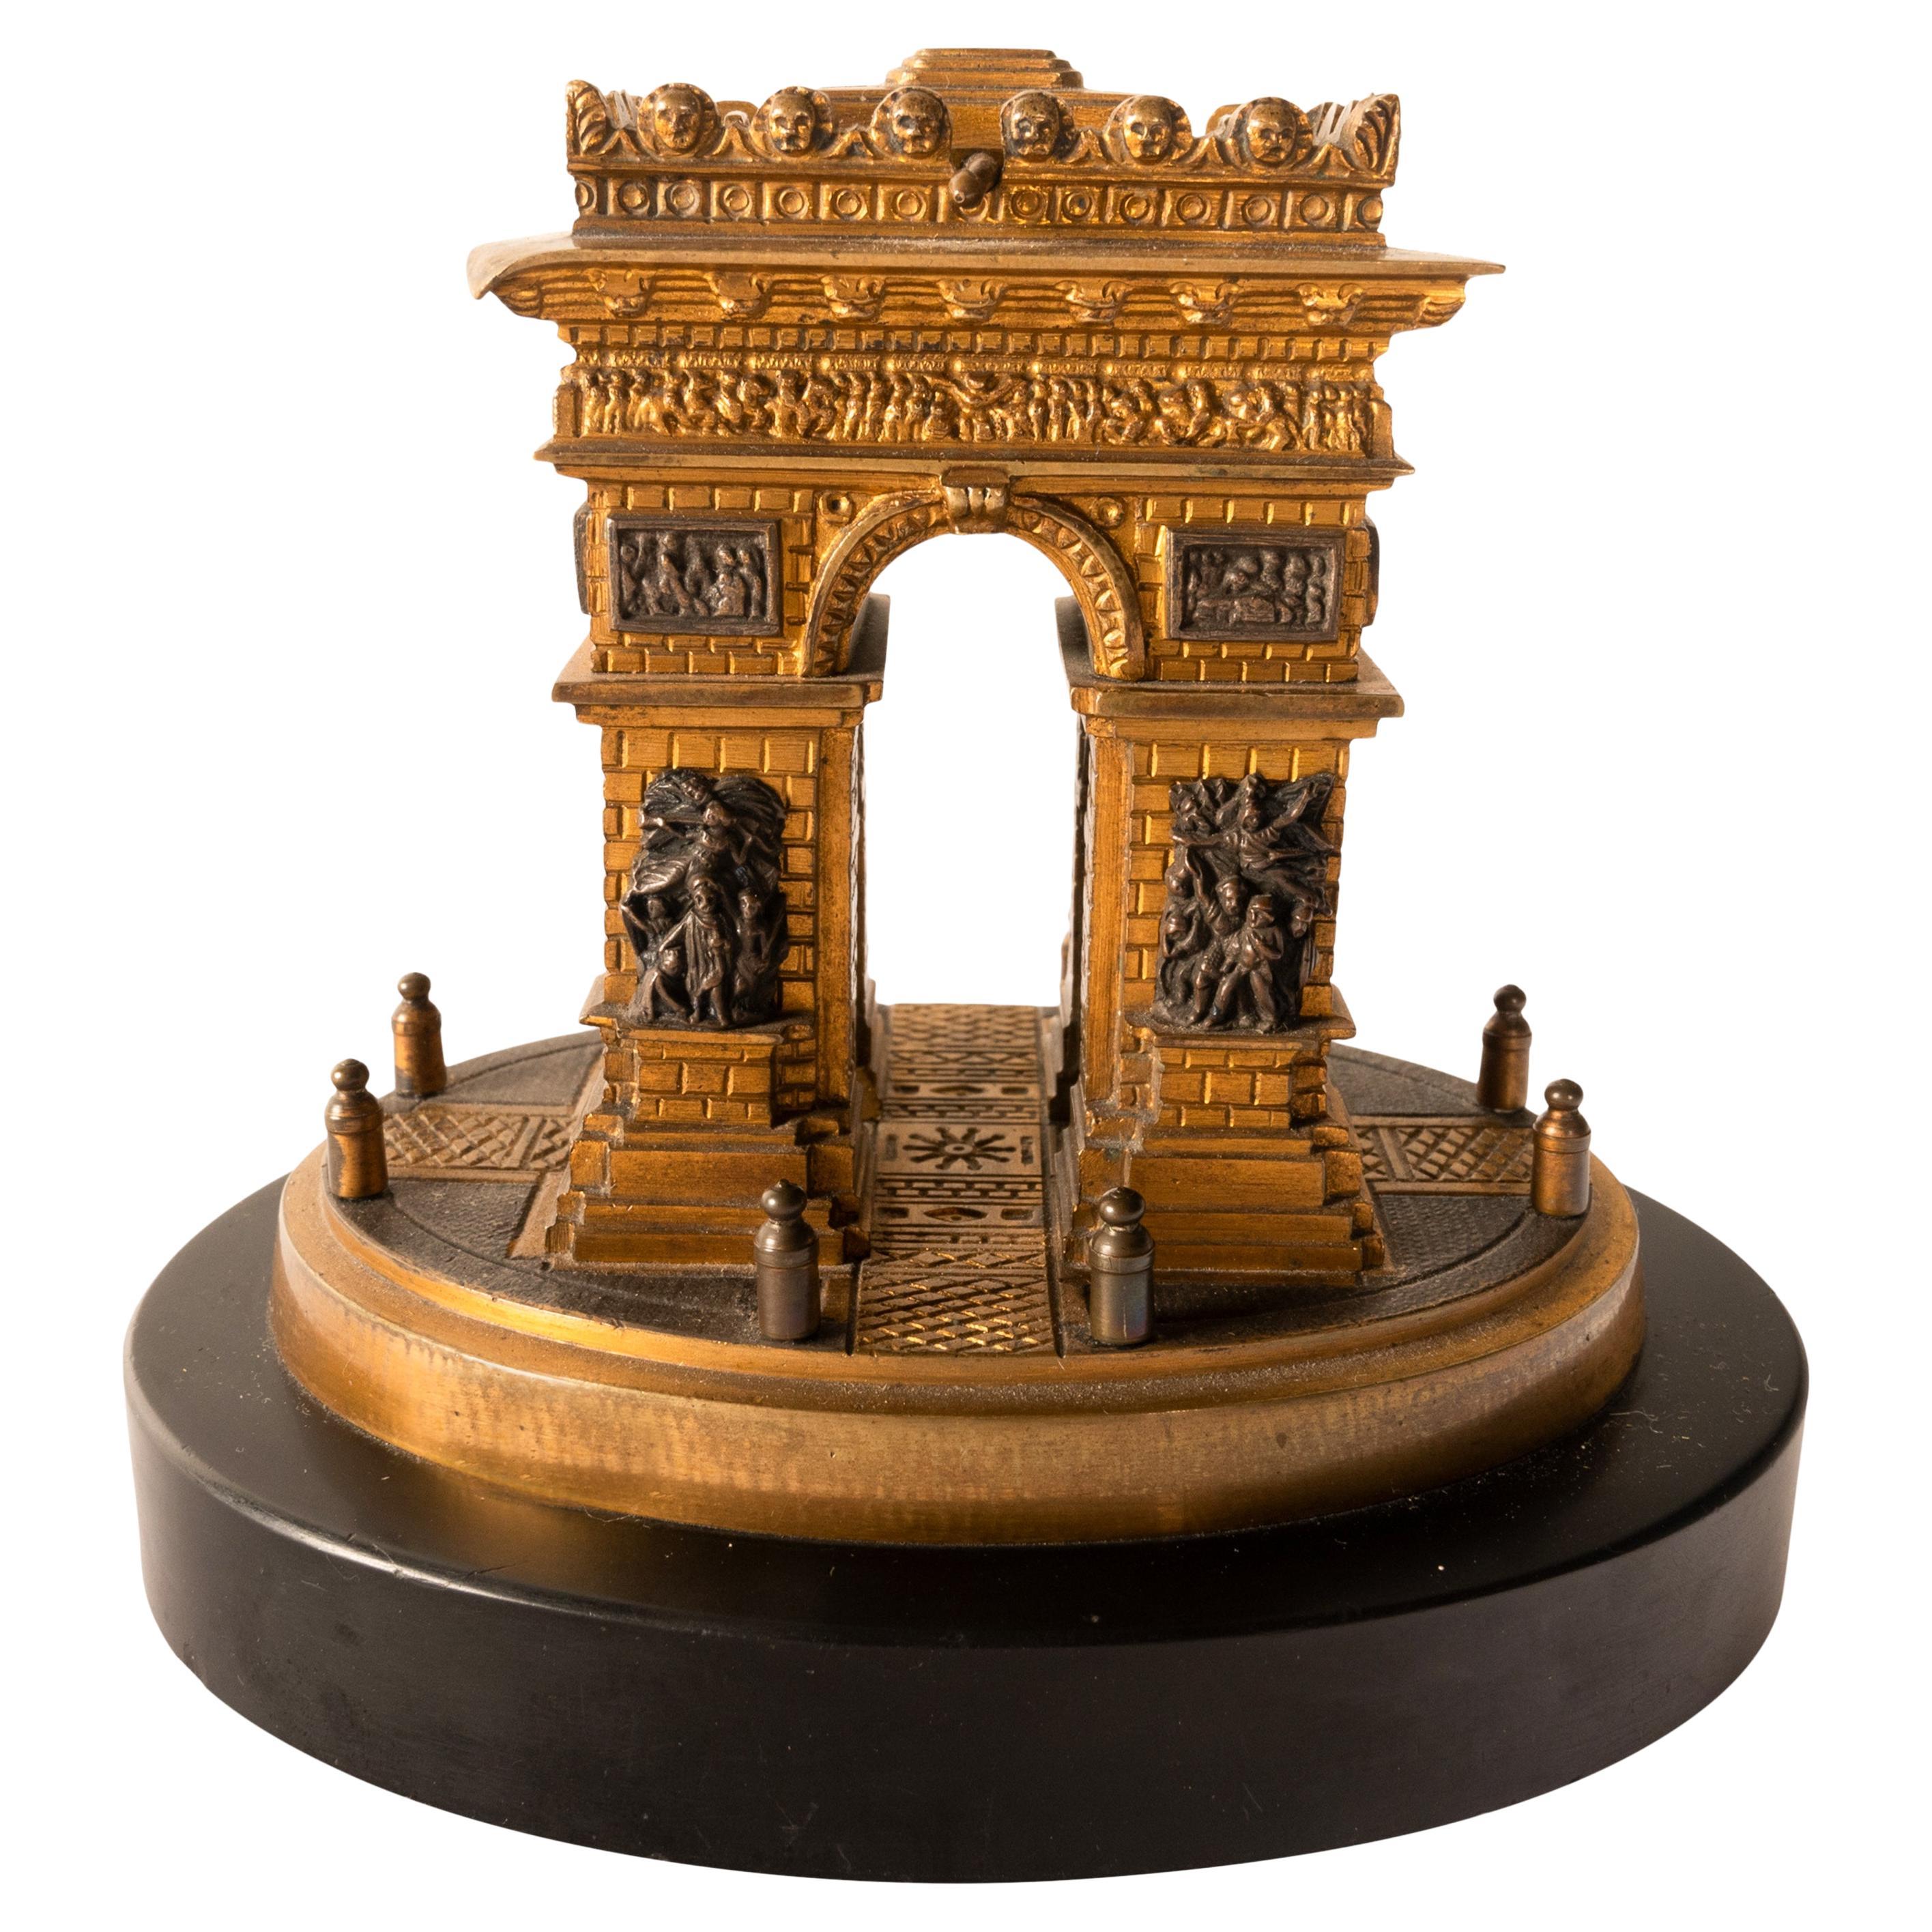 Eine feine frühe 19. Jahrhundert Grand Tour vergoldete Bronze architektonische Modell des Arc de Triomphe, Französisch, um 1825.
Dieses sehr schöne Grand-Tour-Modell eines der berühmtesten Denkmäler Frankreichs, mit  Giebel mit verdecktem